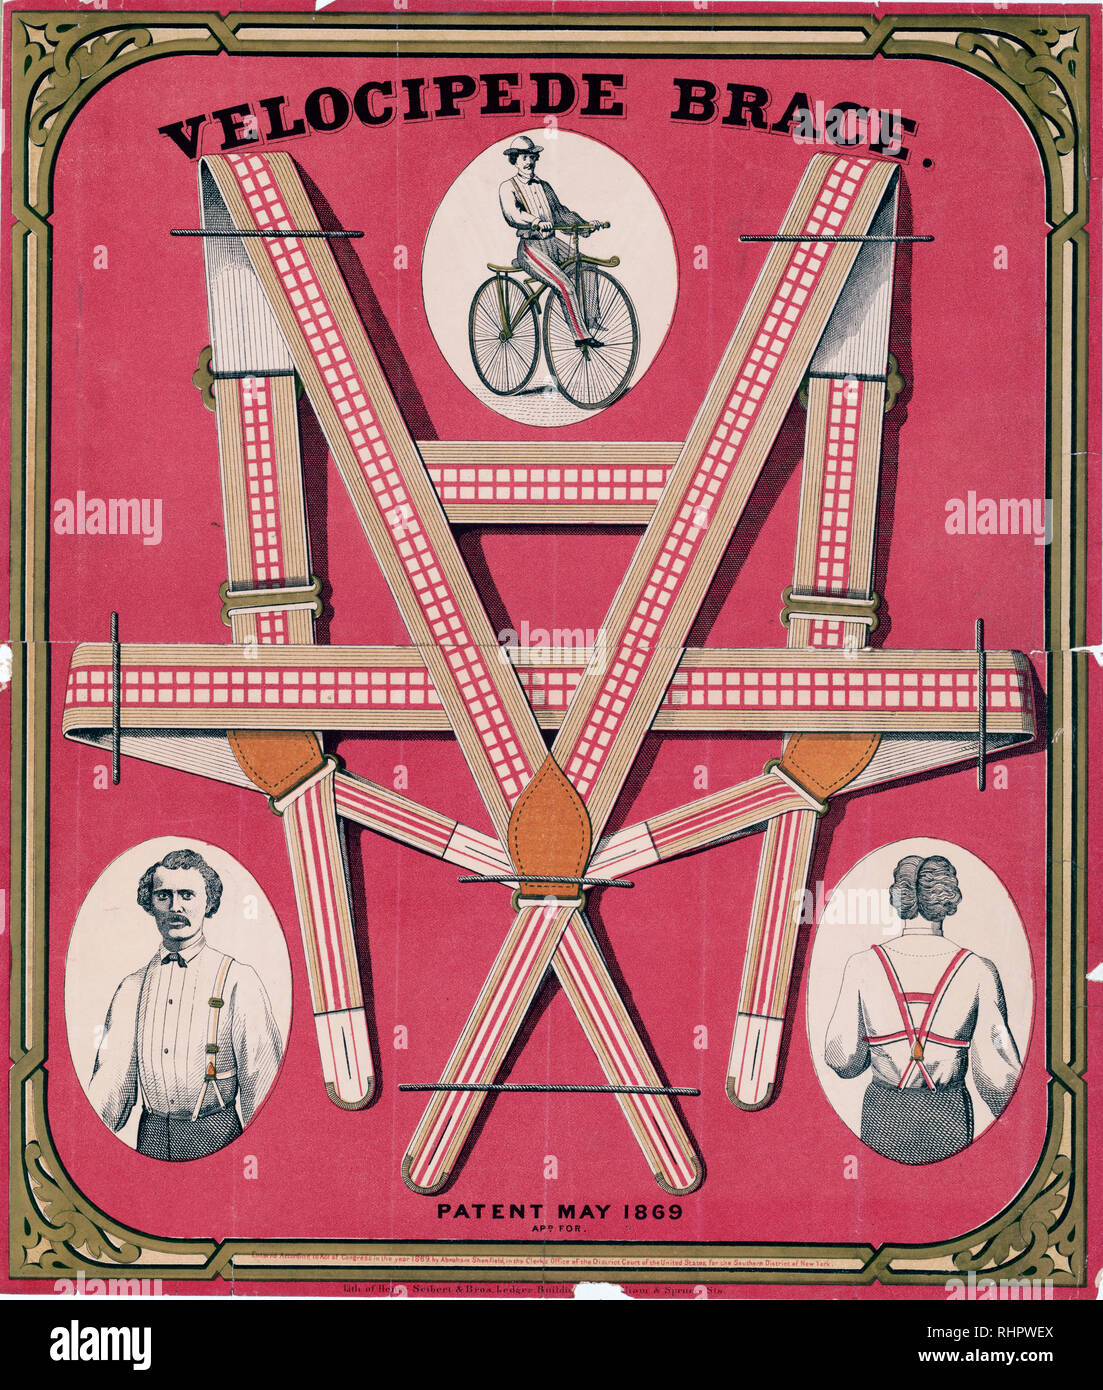 Stampa mostra autoreggenti e tre vignette che mostra un uomo che li indossa  mentre in sella ad una bicicletta e vista frontale e del retro di un uomo  che indossa le bretelle